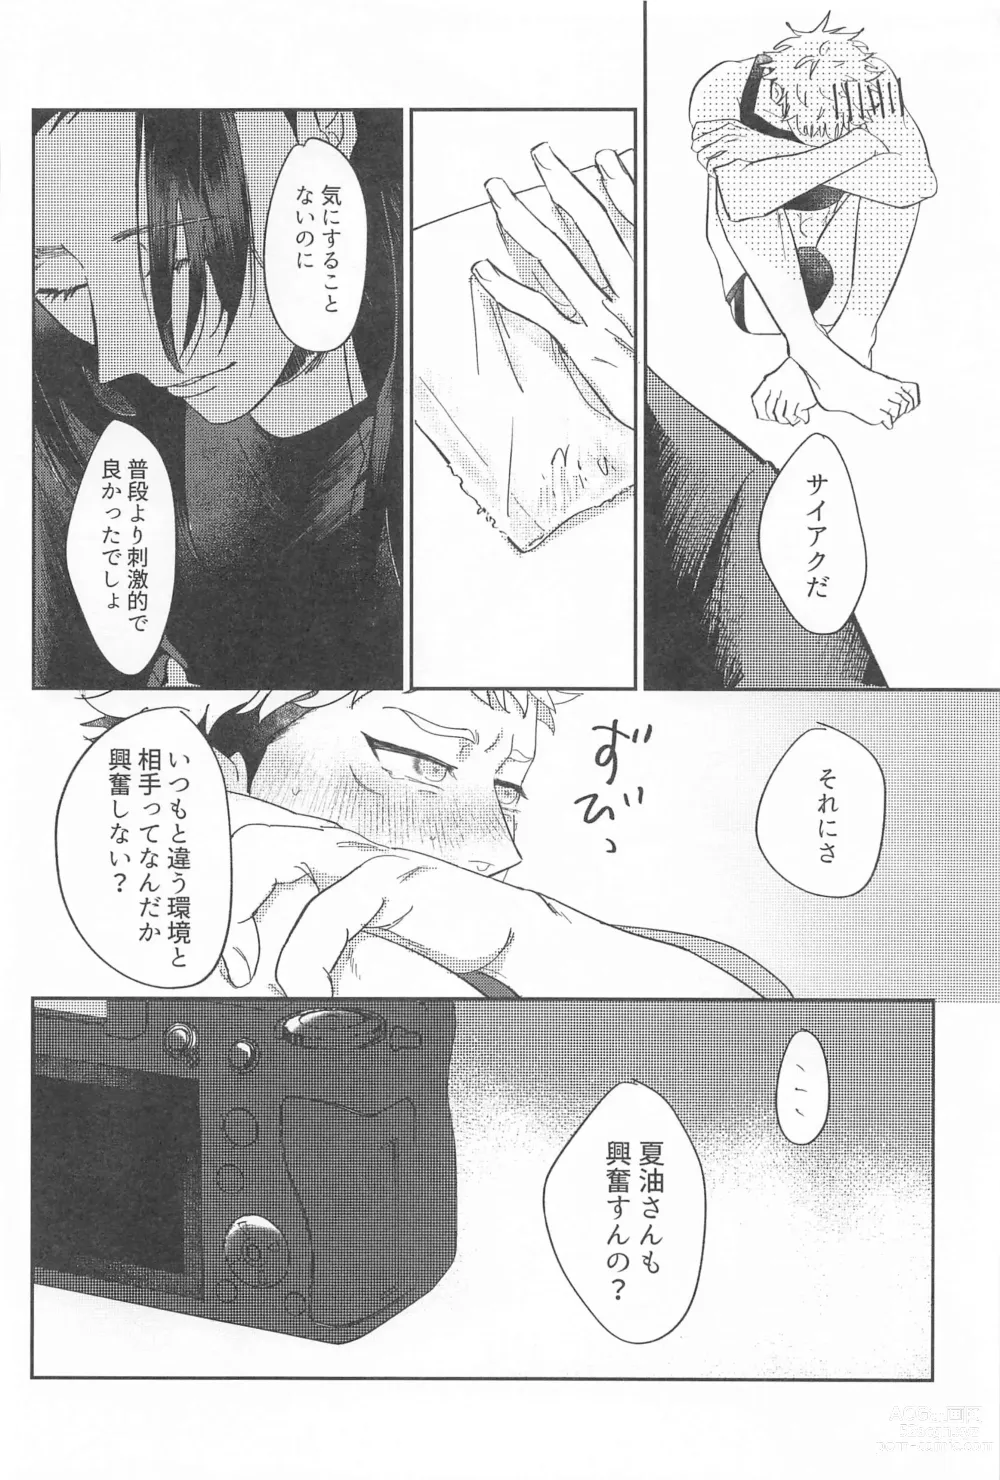 Page 25 of doujinshi Shikakukei no PENTAPRISM